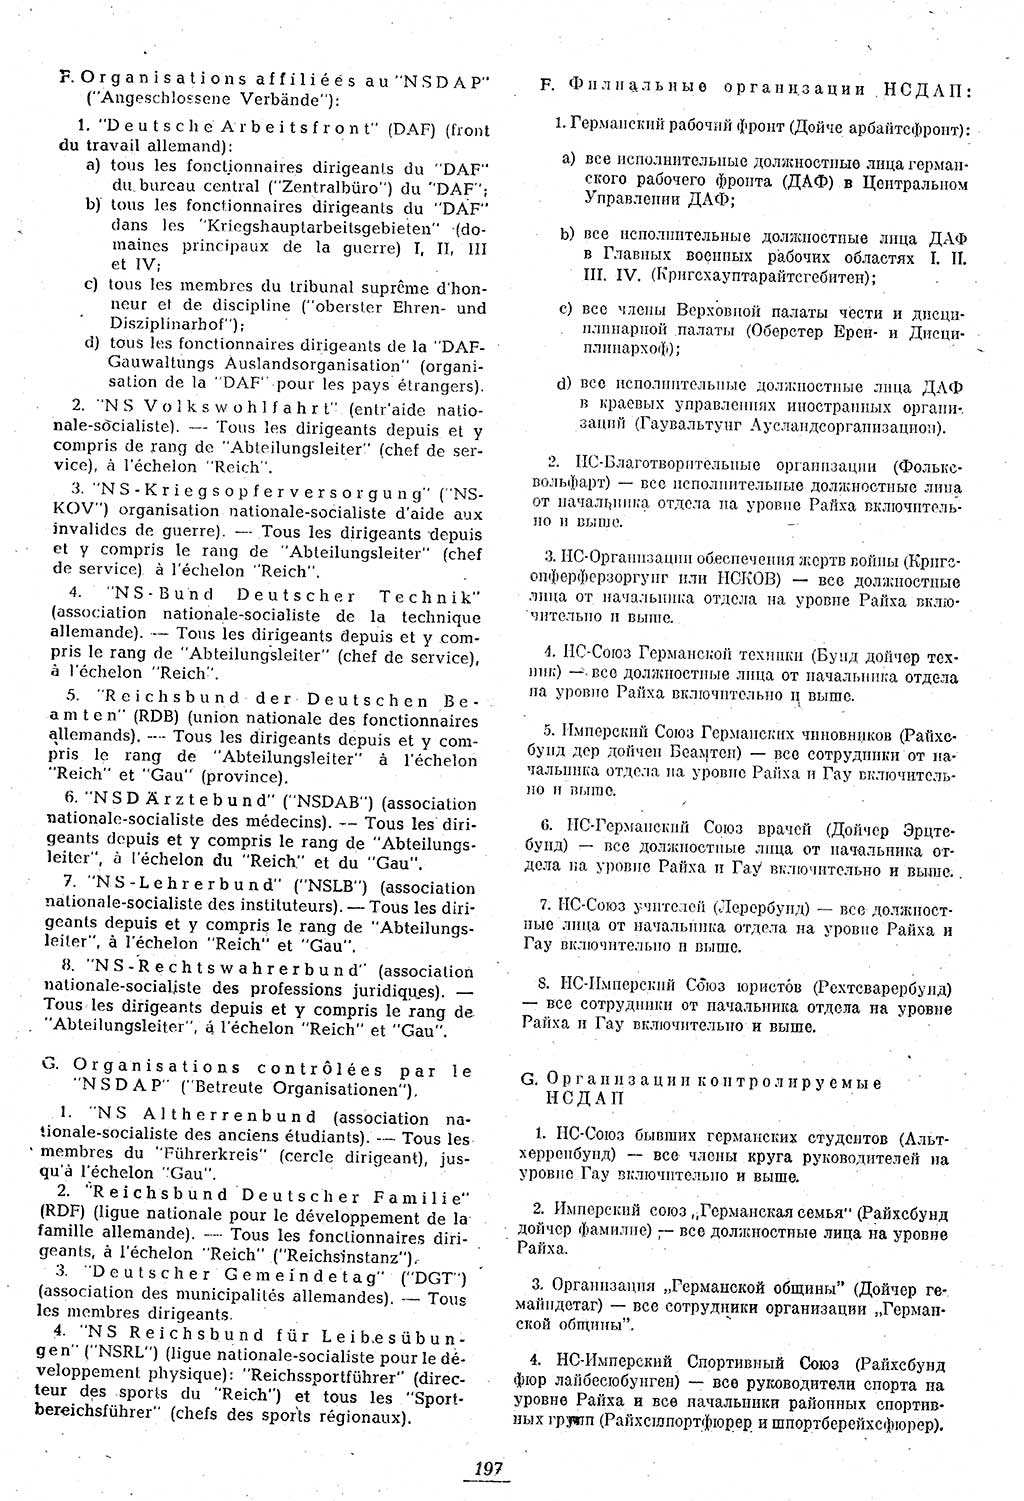 Amtsblatt des Kontrollrats (ABlKR) in Deutschland 1946, Seite 197/1 (ABlKR Dtl. 1946, S. 197/1)